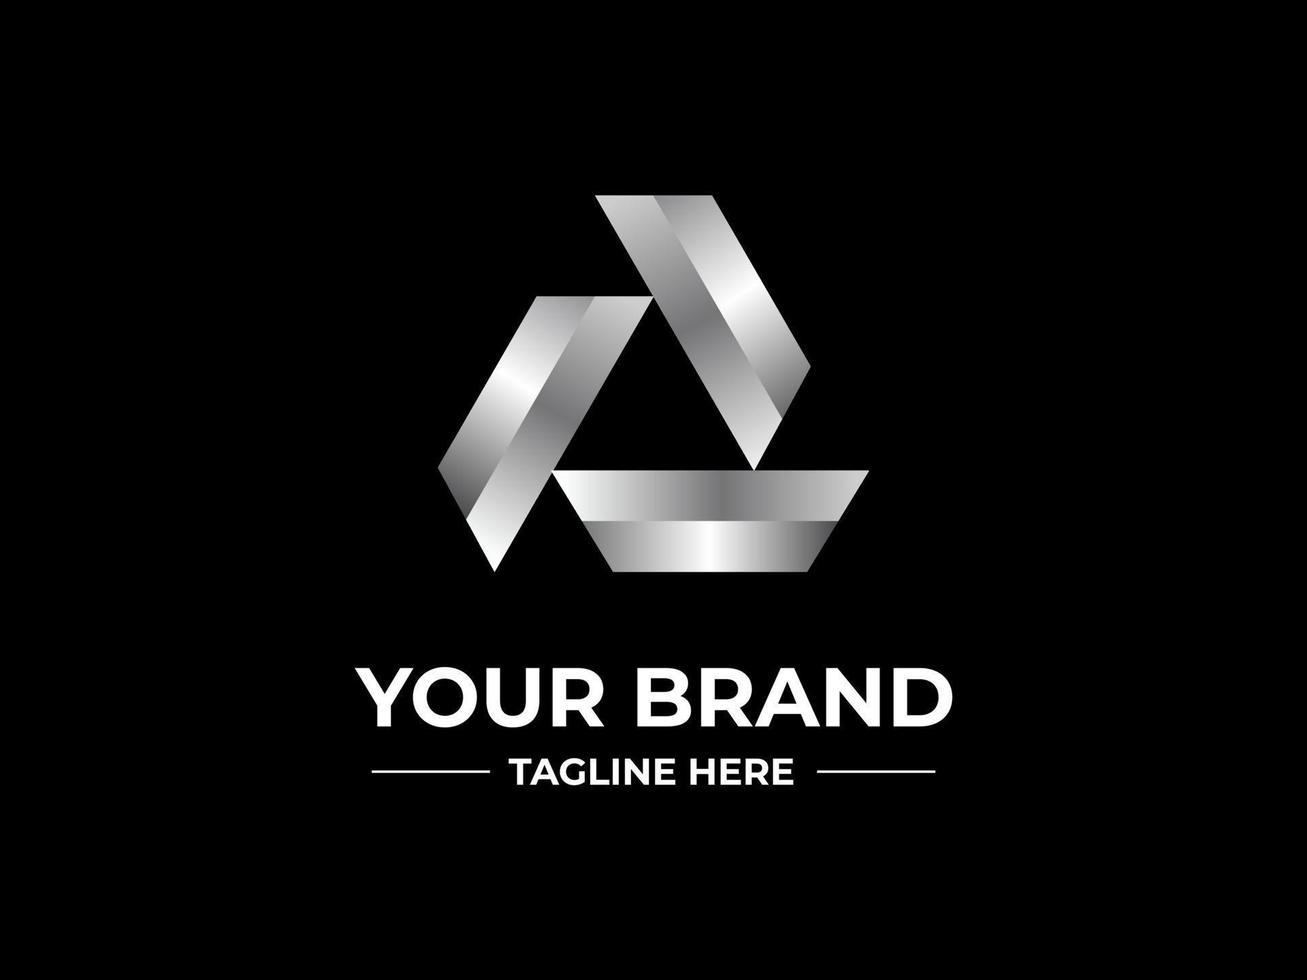 création abstraite de logo triangle argenté pour marque ou entreprise vecteur